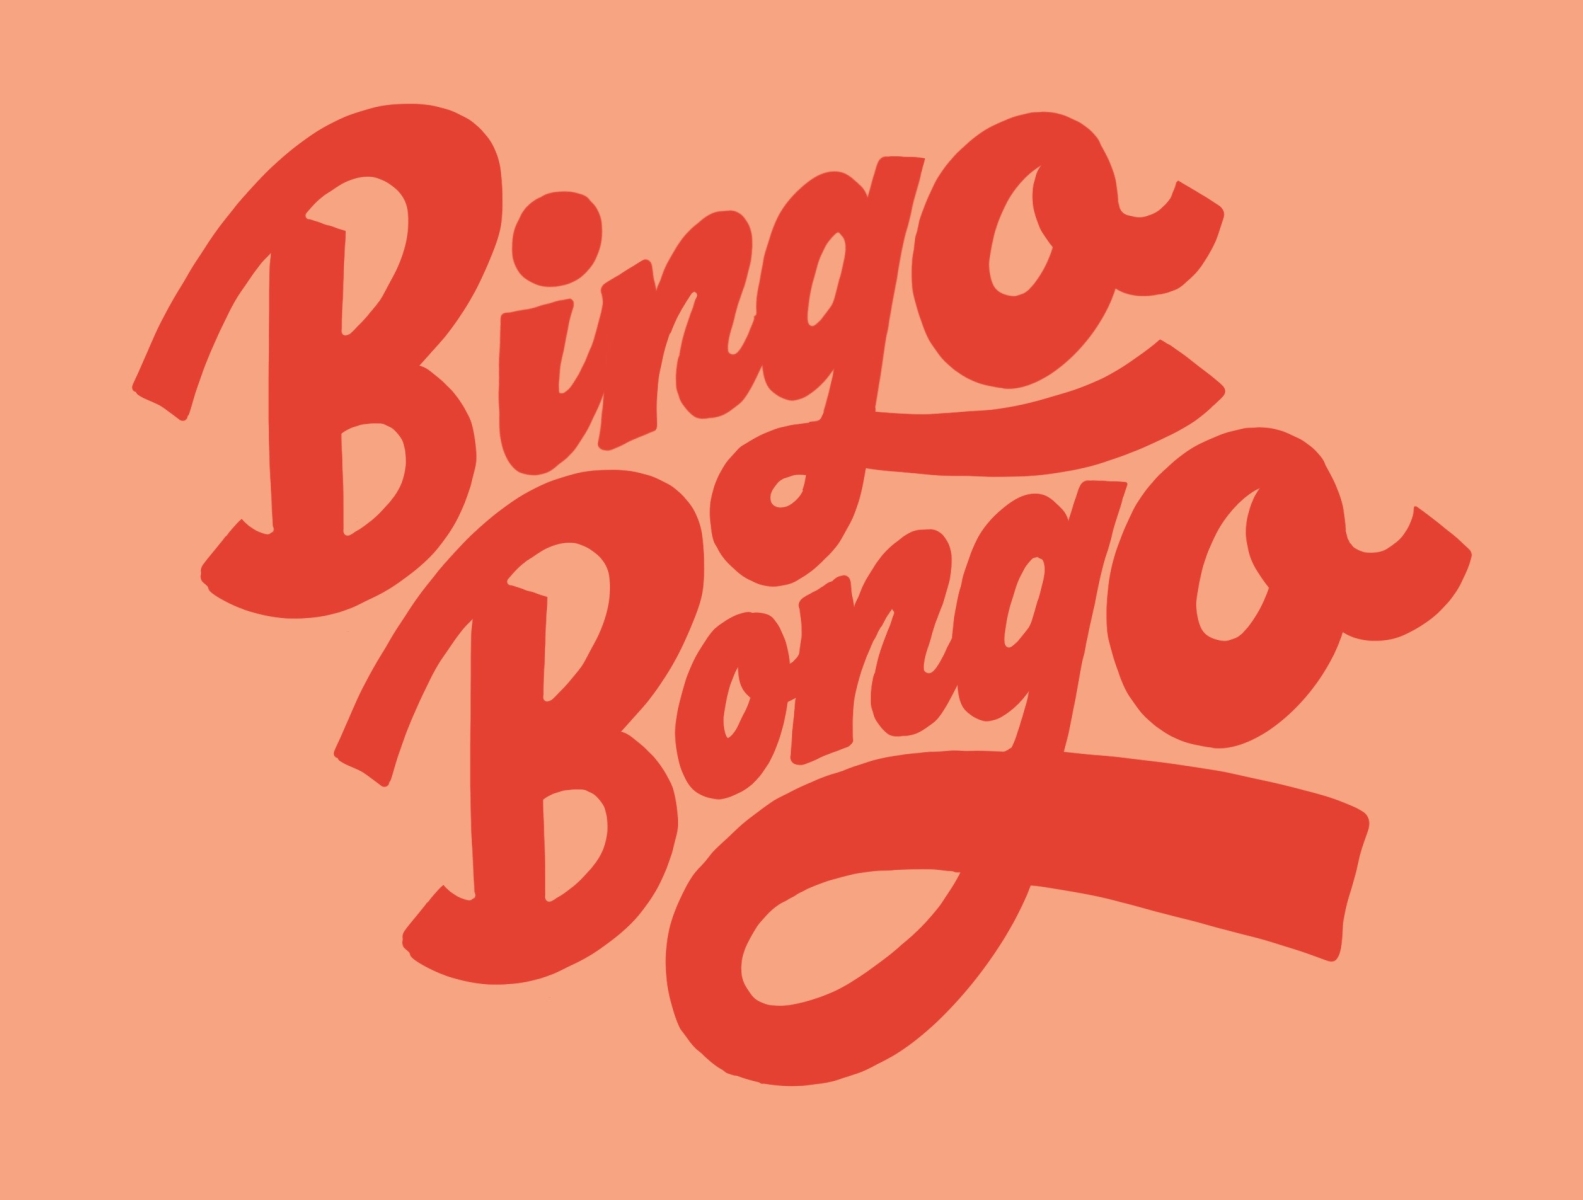 Bingo Bongo Lettering by Loren Klein on Dribbble